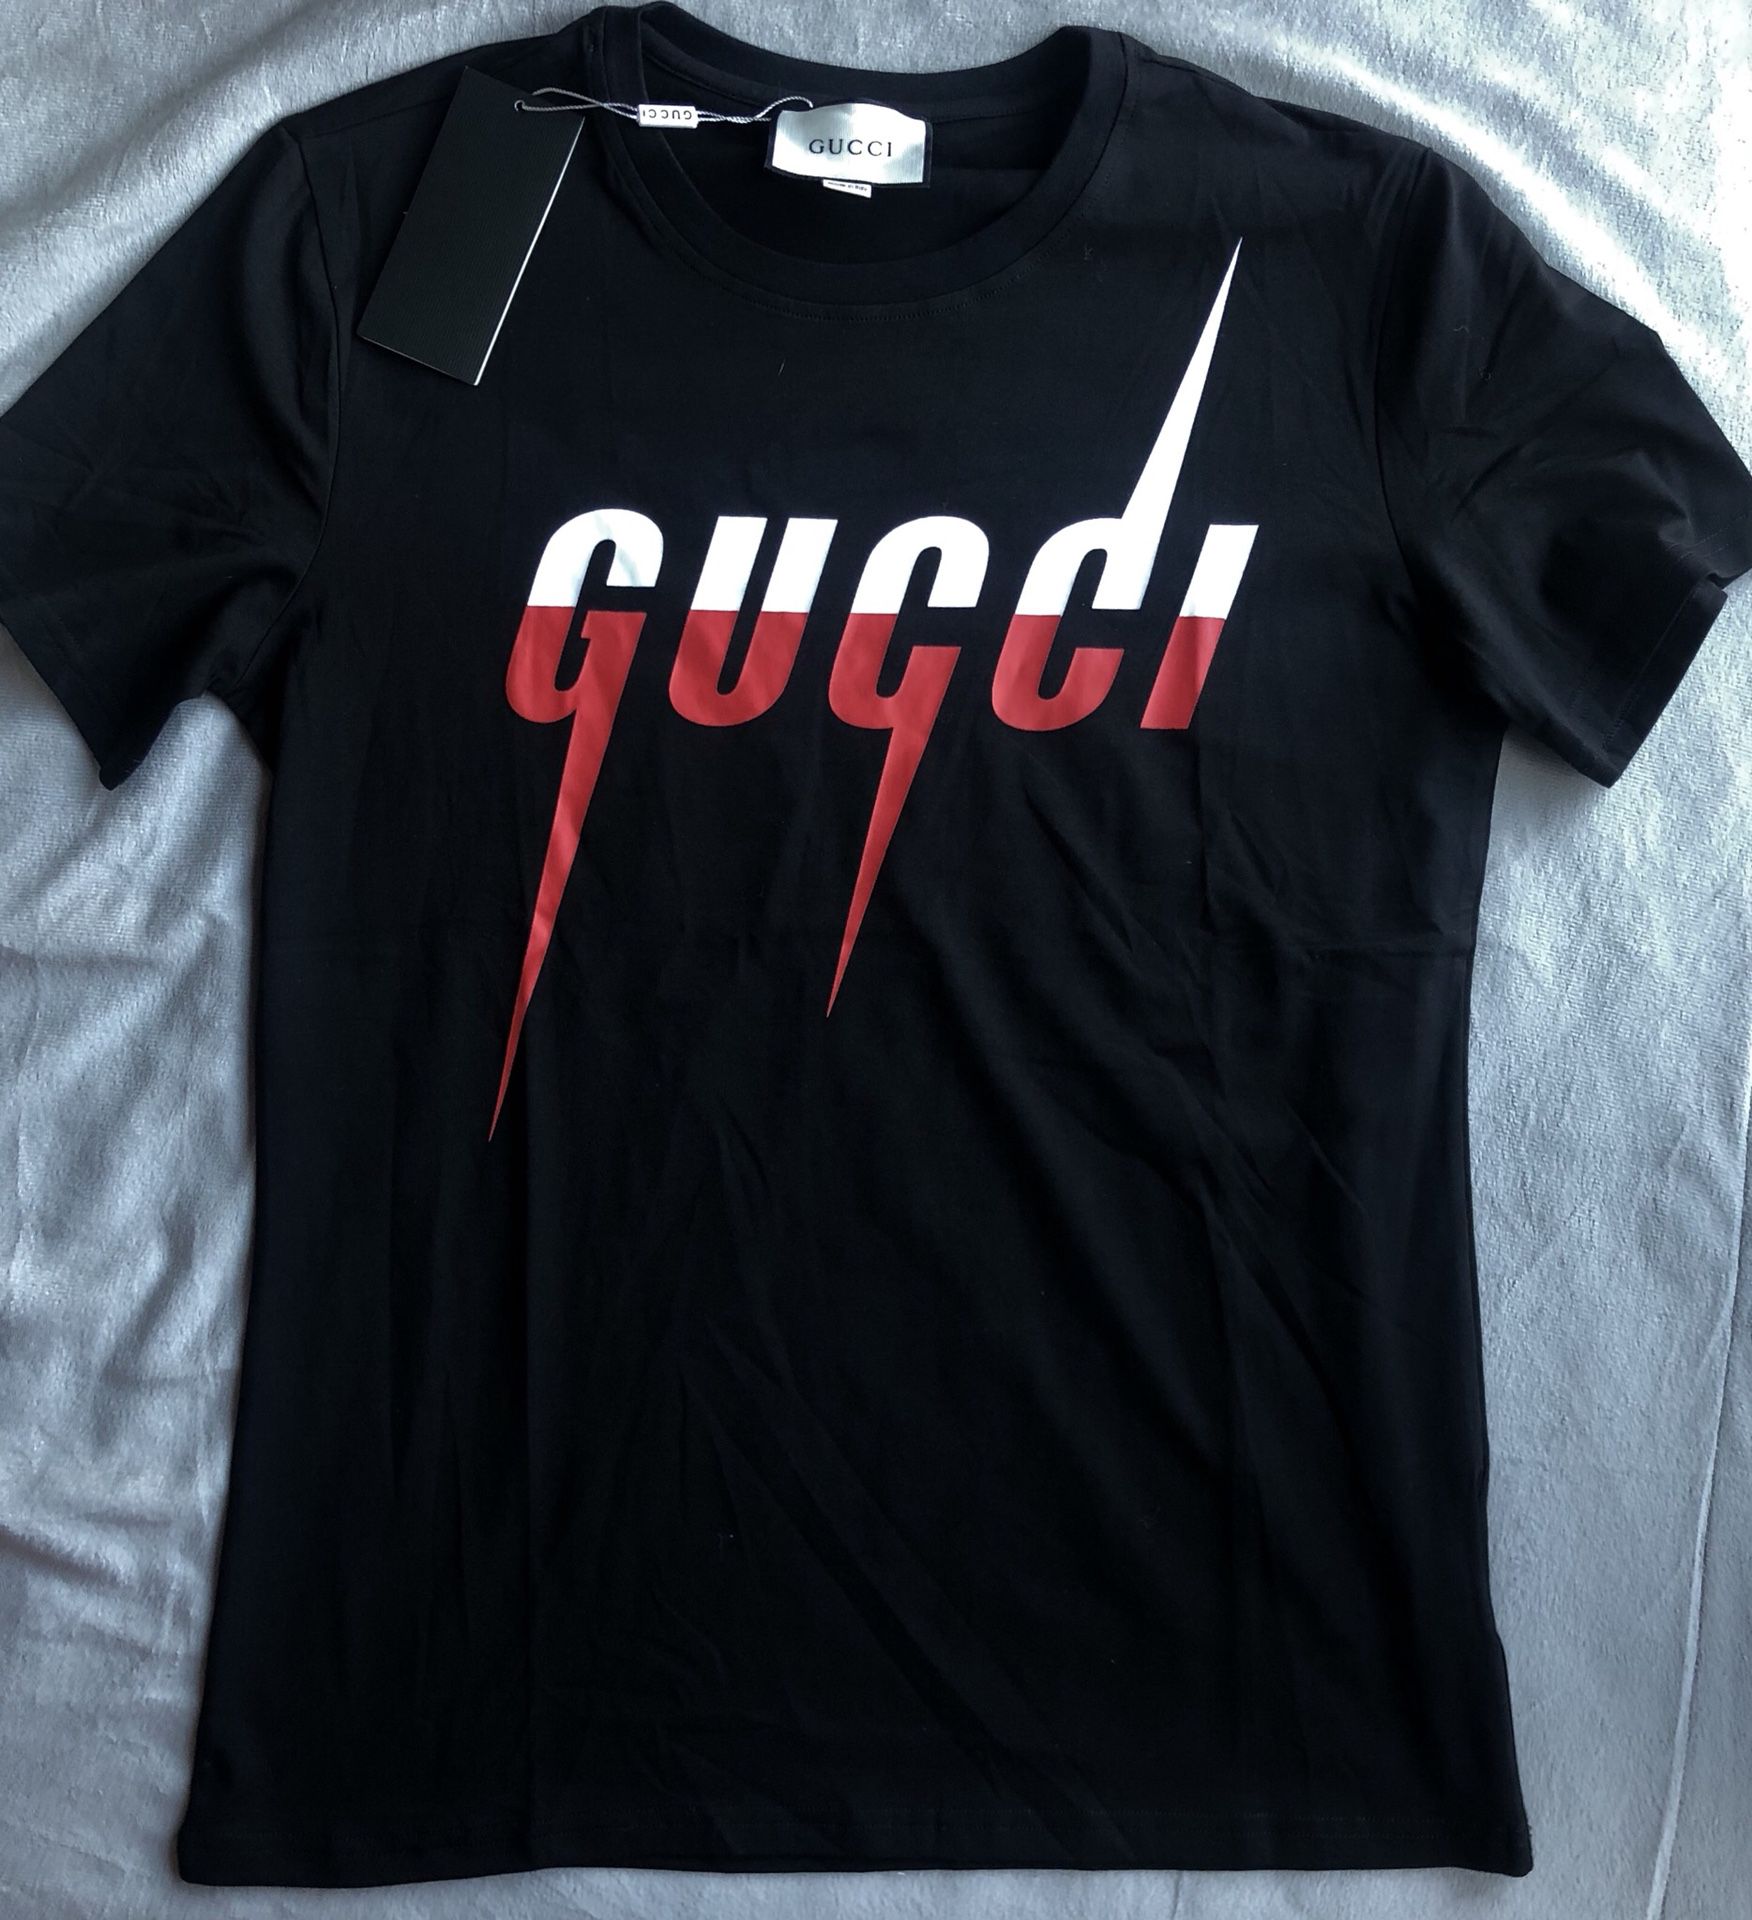 Black Gucci t shirt